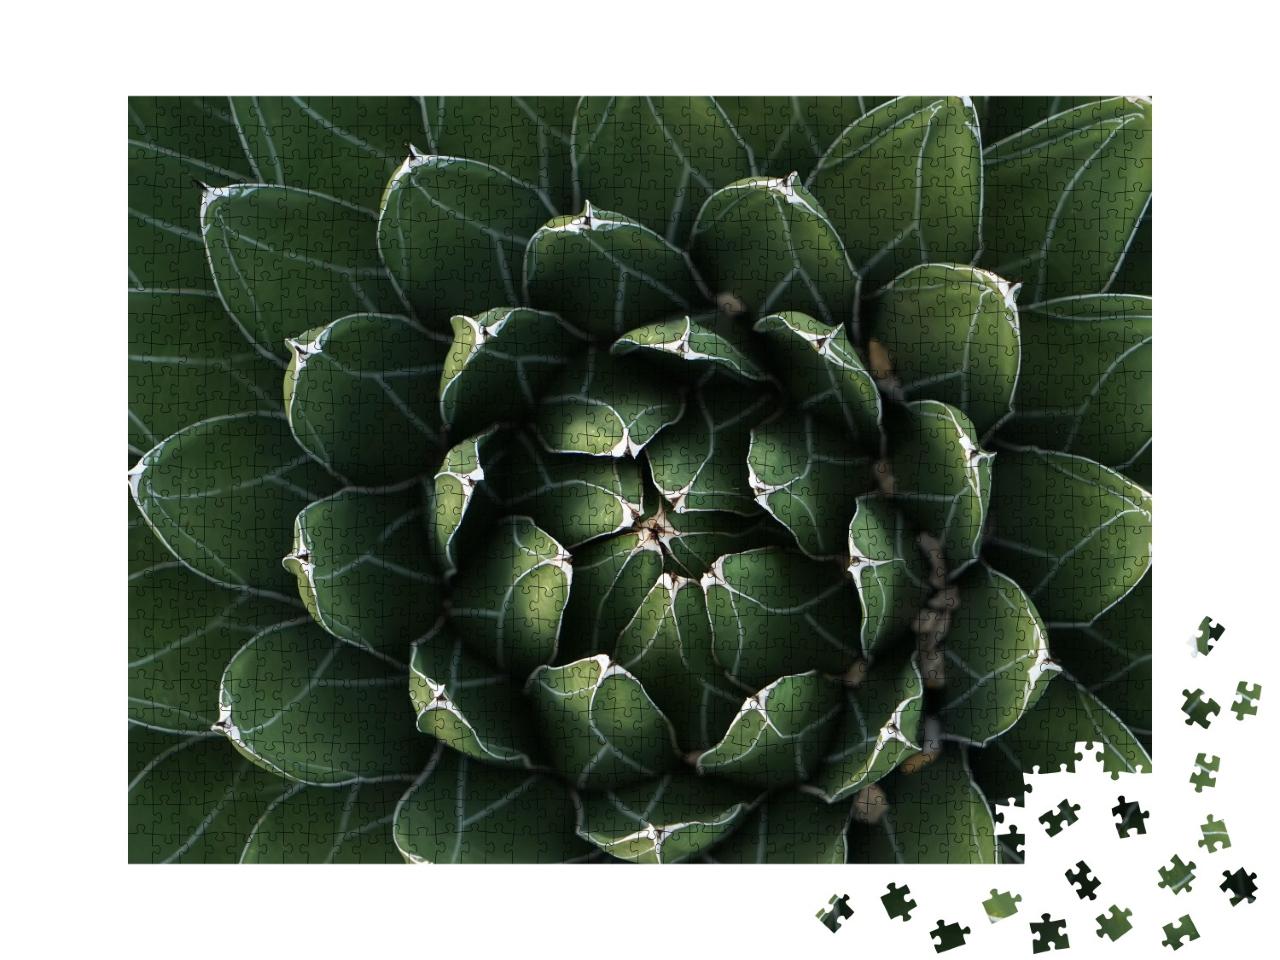 Puzzle de 1000 pièces « Cactus magnifiquement symétrique en gros plan »